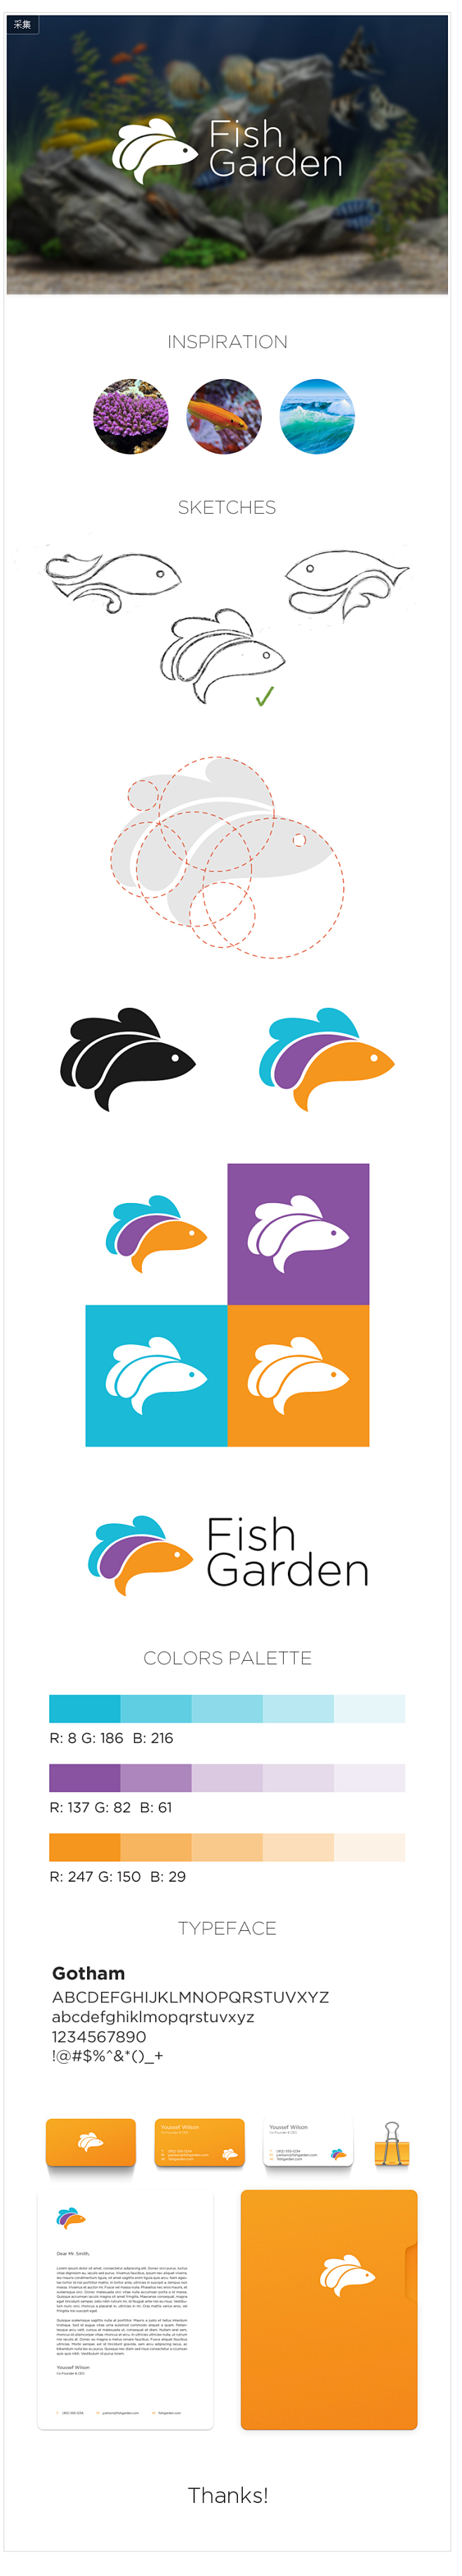 默默天心从miking转采于2018-08-25 15:08:10鱼 vi#logo#p-品牌设计